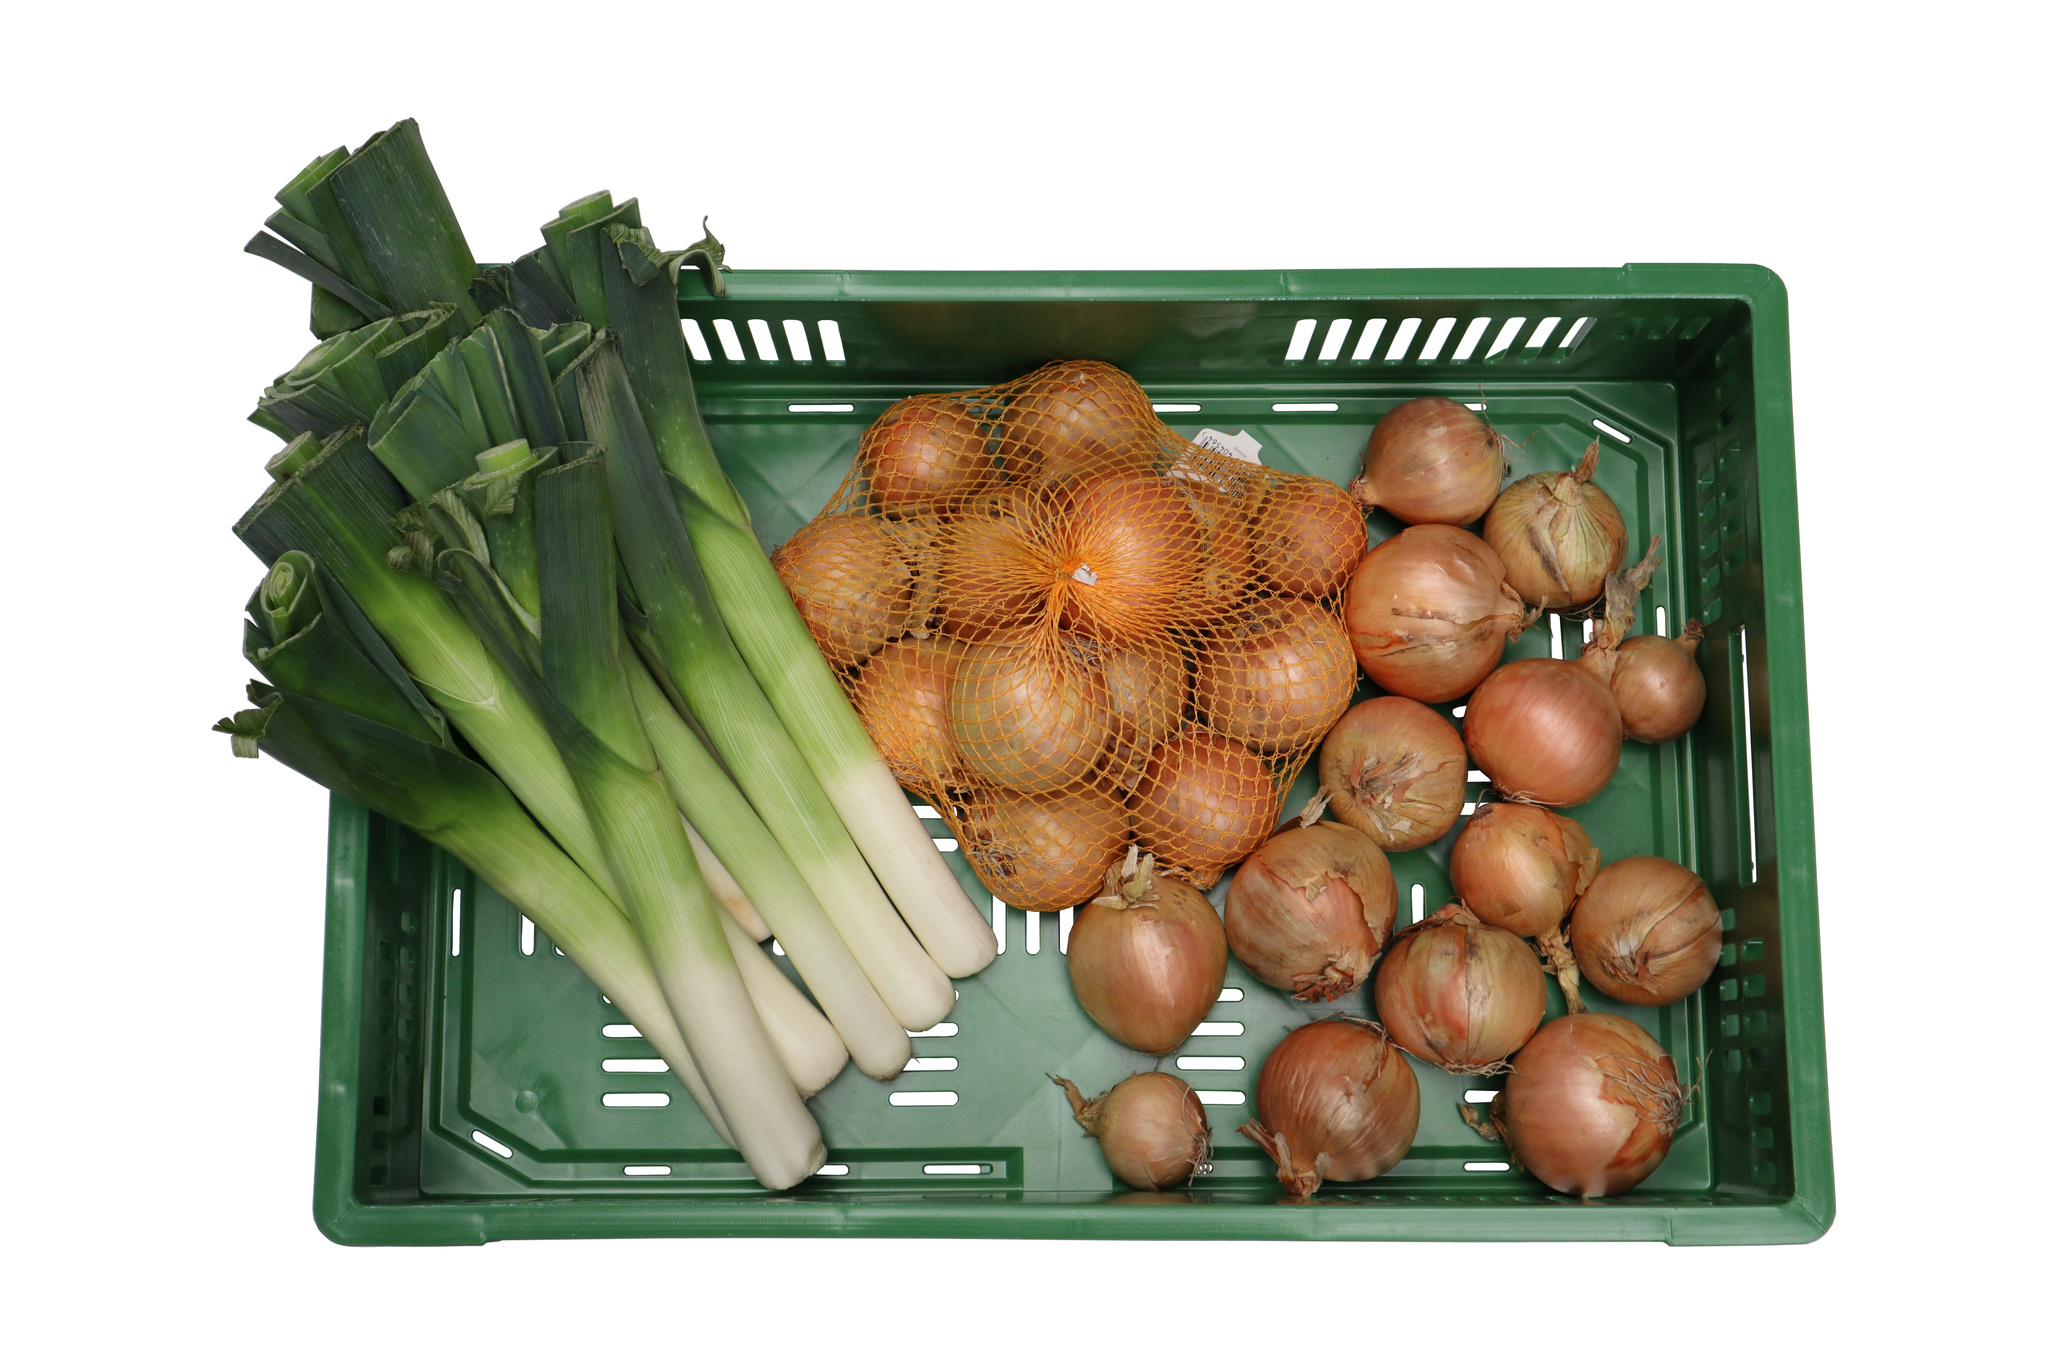 Caisse agricole, Bac à fruits et légumes